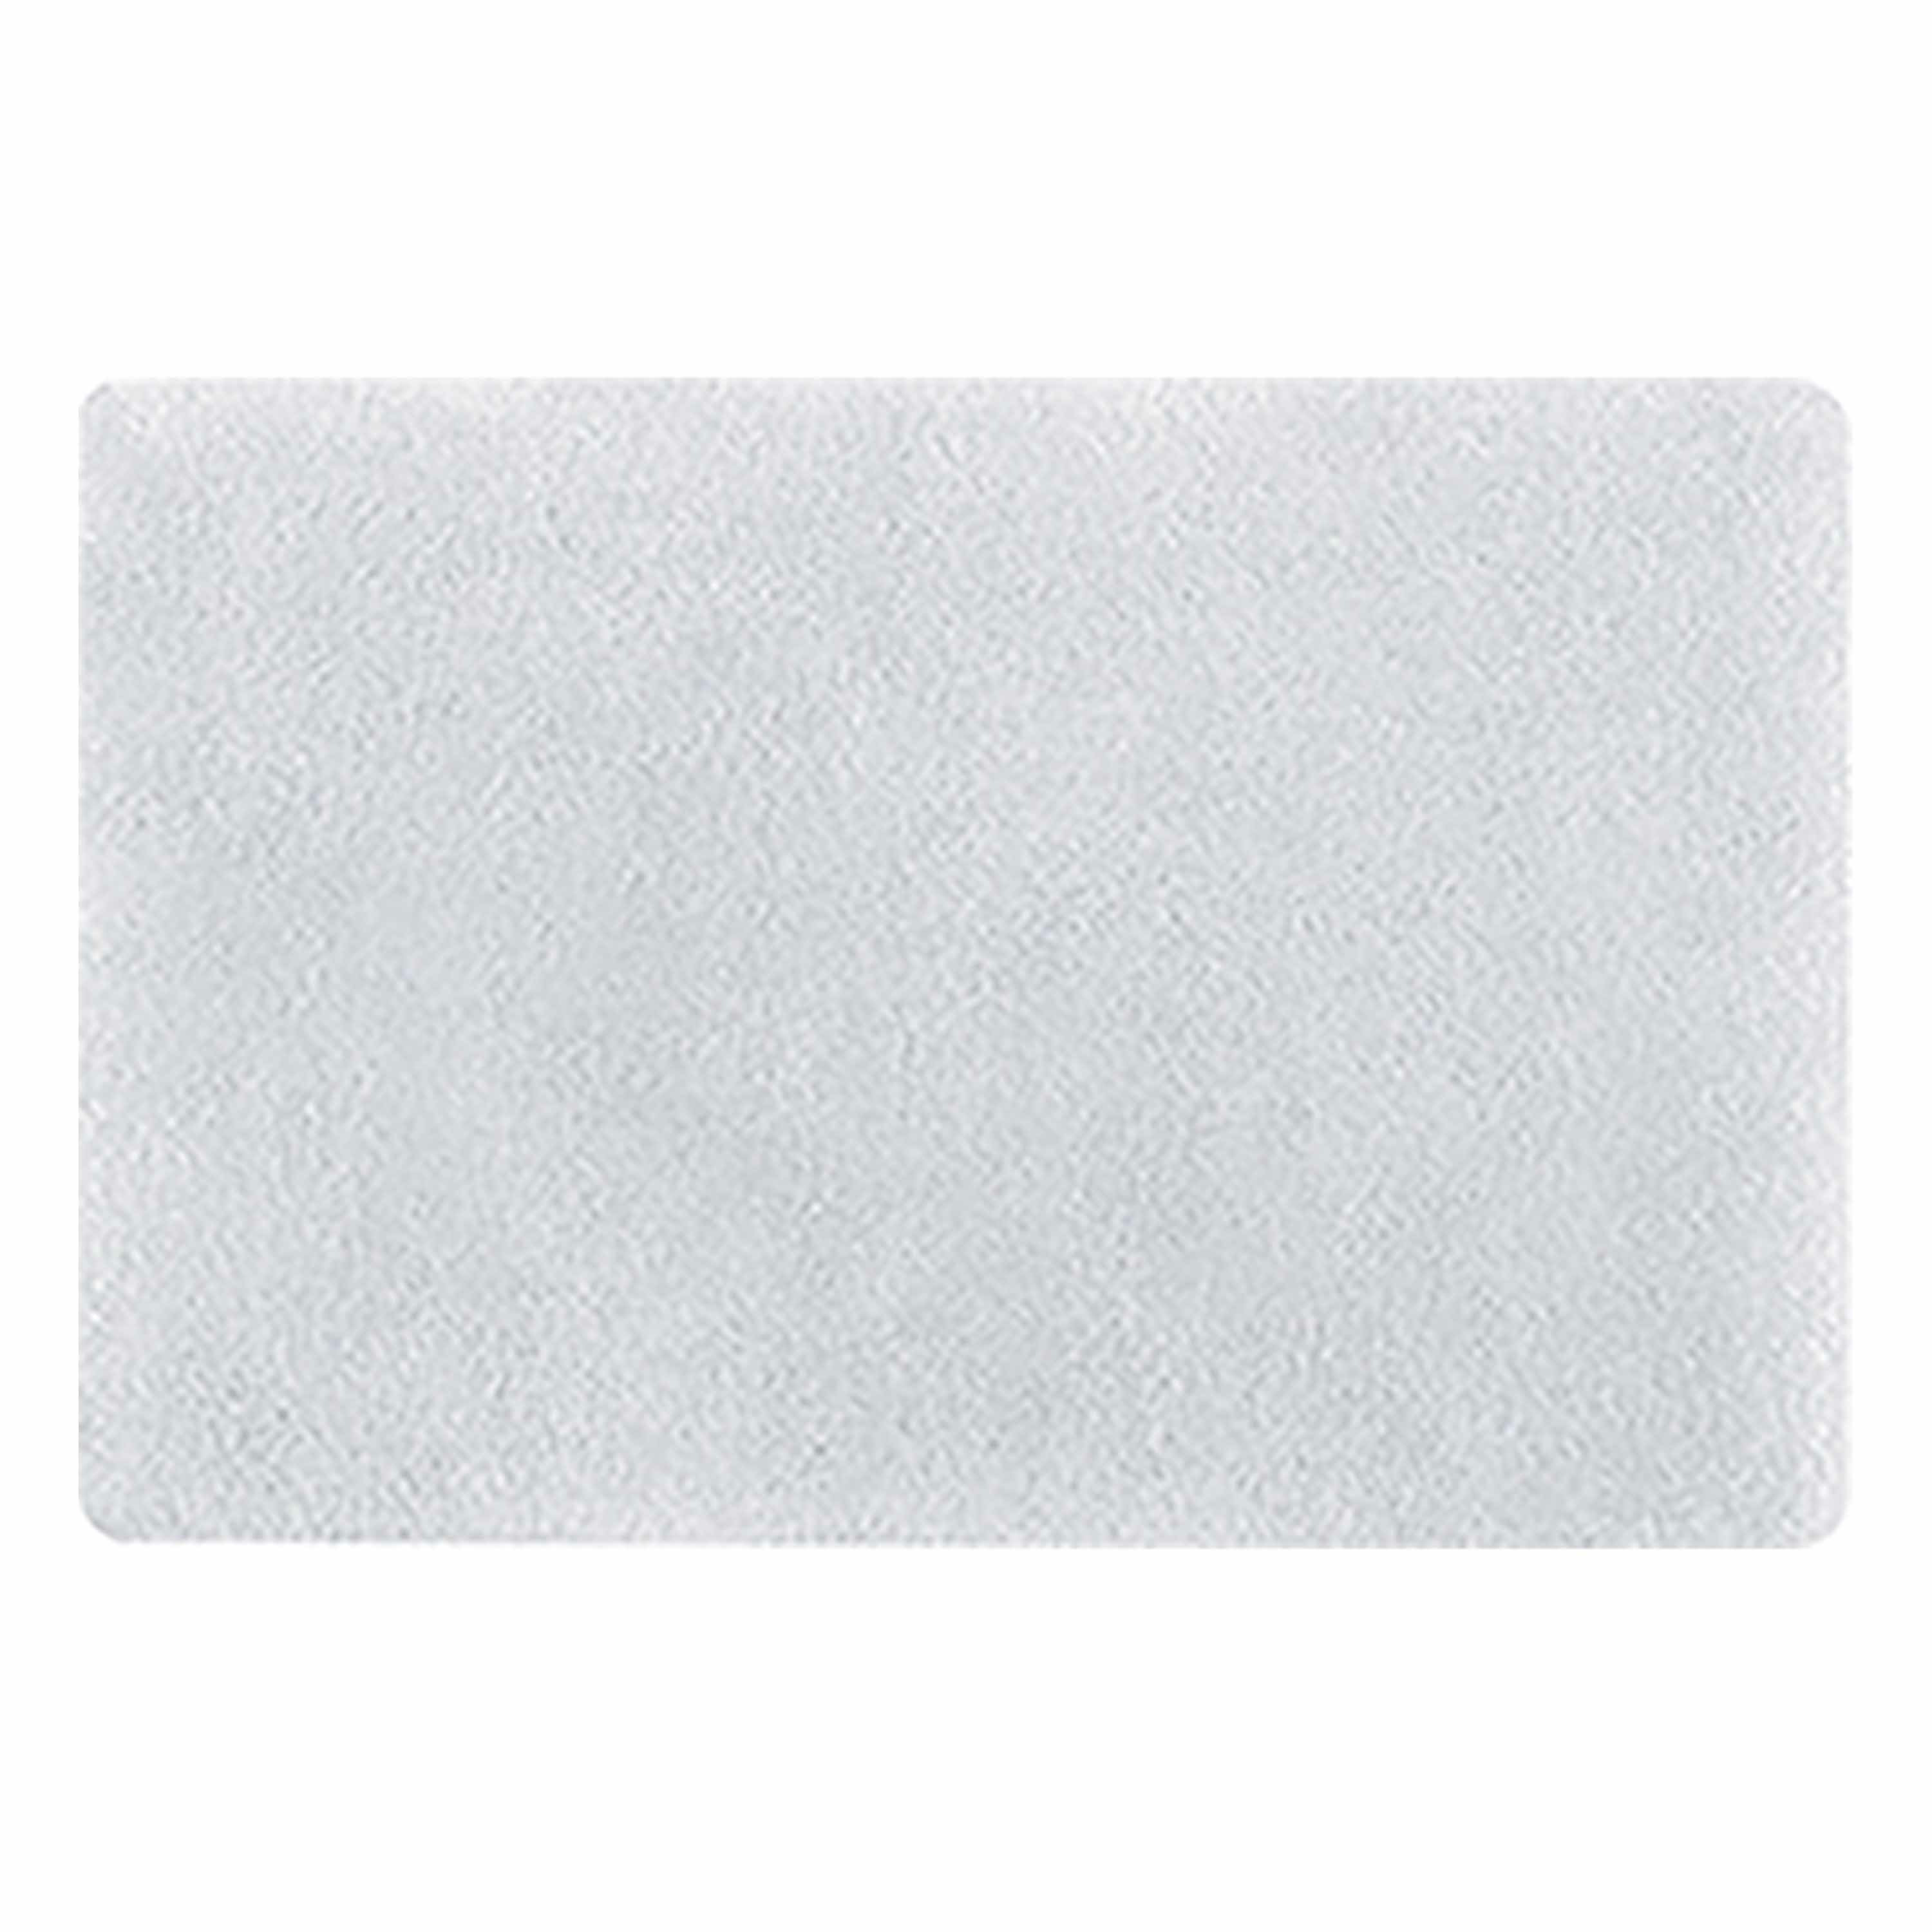 Spirella badkamer vloer kleedje-badmat tapijt hoogpolig en luxe uitvoering wit 50 x 80 cm Microfiber